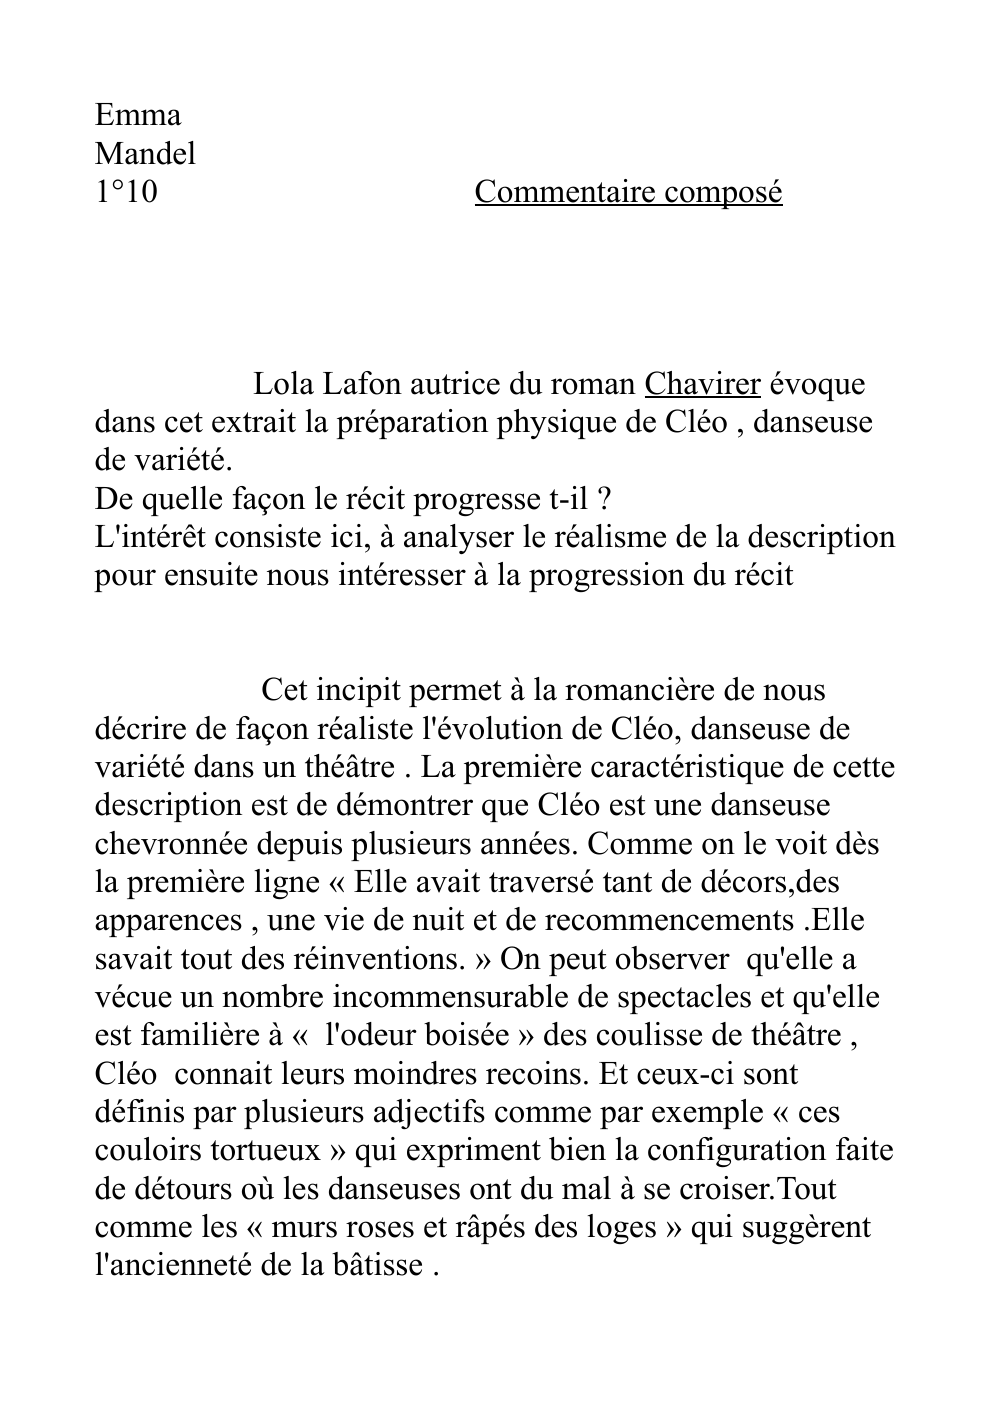 Prévisualisation du document commentaire composé: Lola Lafon - Chavirer